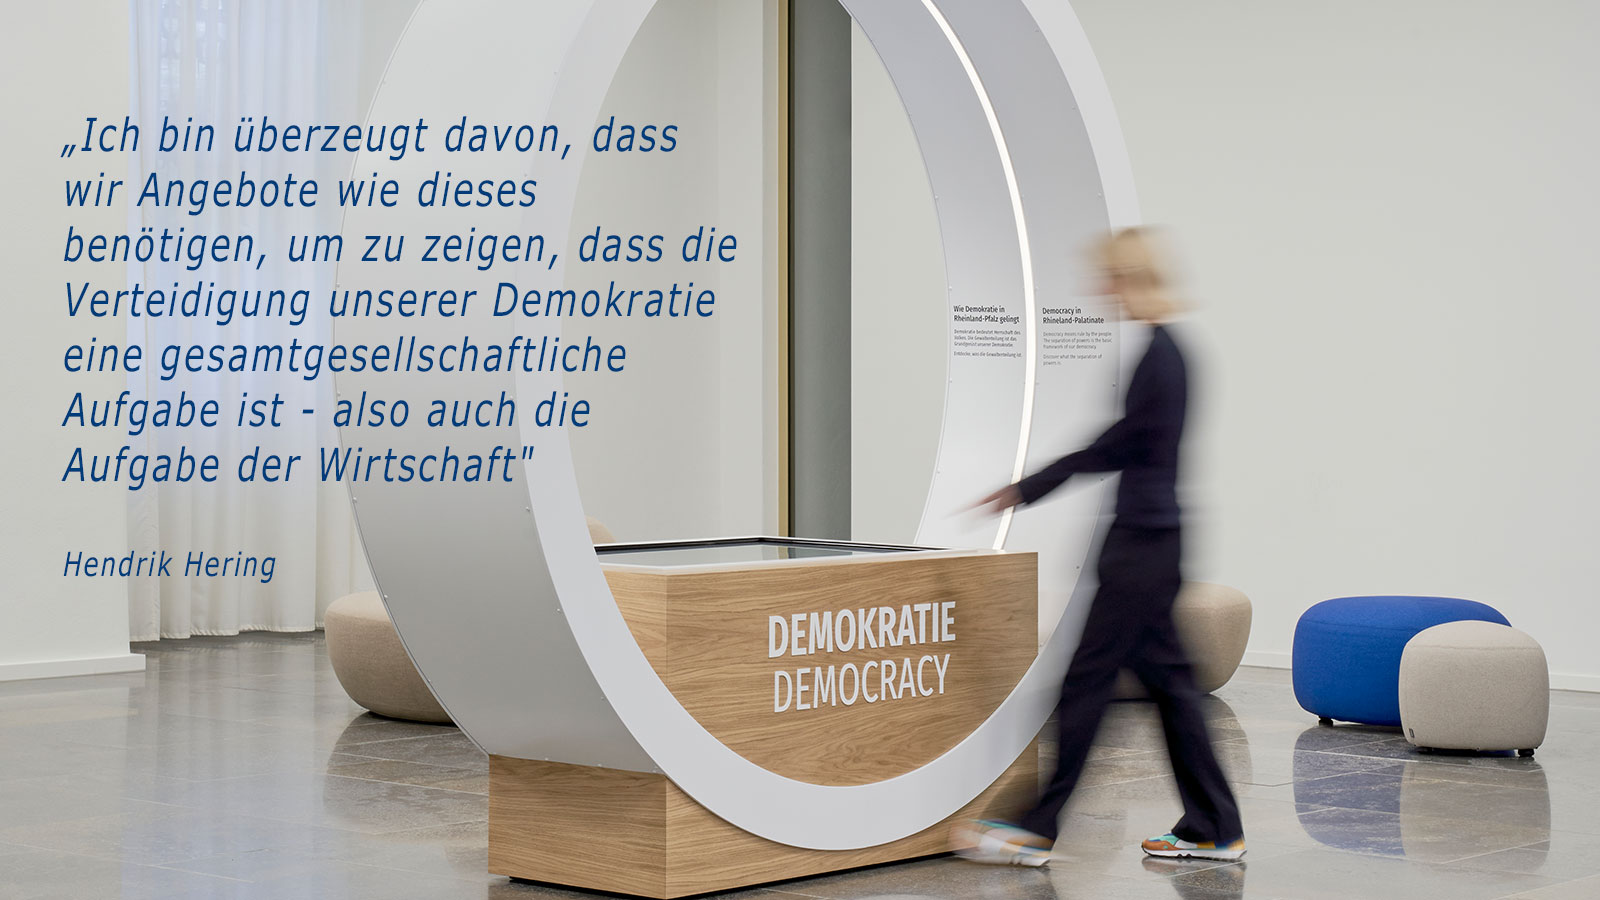 Zitat Hendrik Hering: „Ich bin überzeugt davon, dass wir Angebote wie dieses benötigen, um zu zeigen, dass die Verteidigung unserer Demokratie eine gesamtgesellschaftliche Aufgabe ist - also auch die Aufgabe der Wirtschaft"; Abbildung des Demokratieportals des Landtags Rheinland-Pfalz mit Person